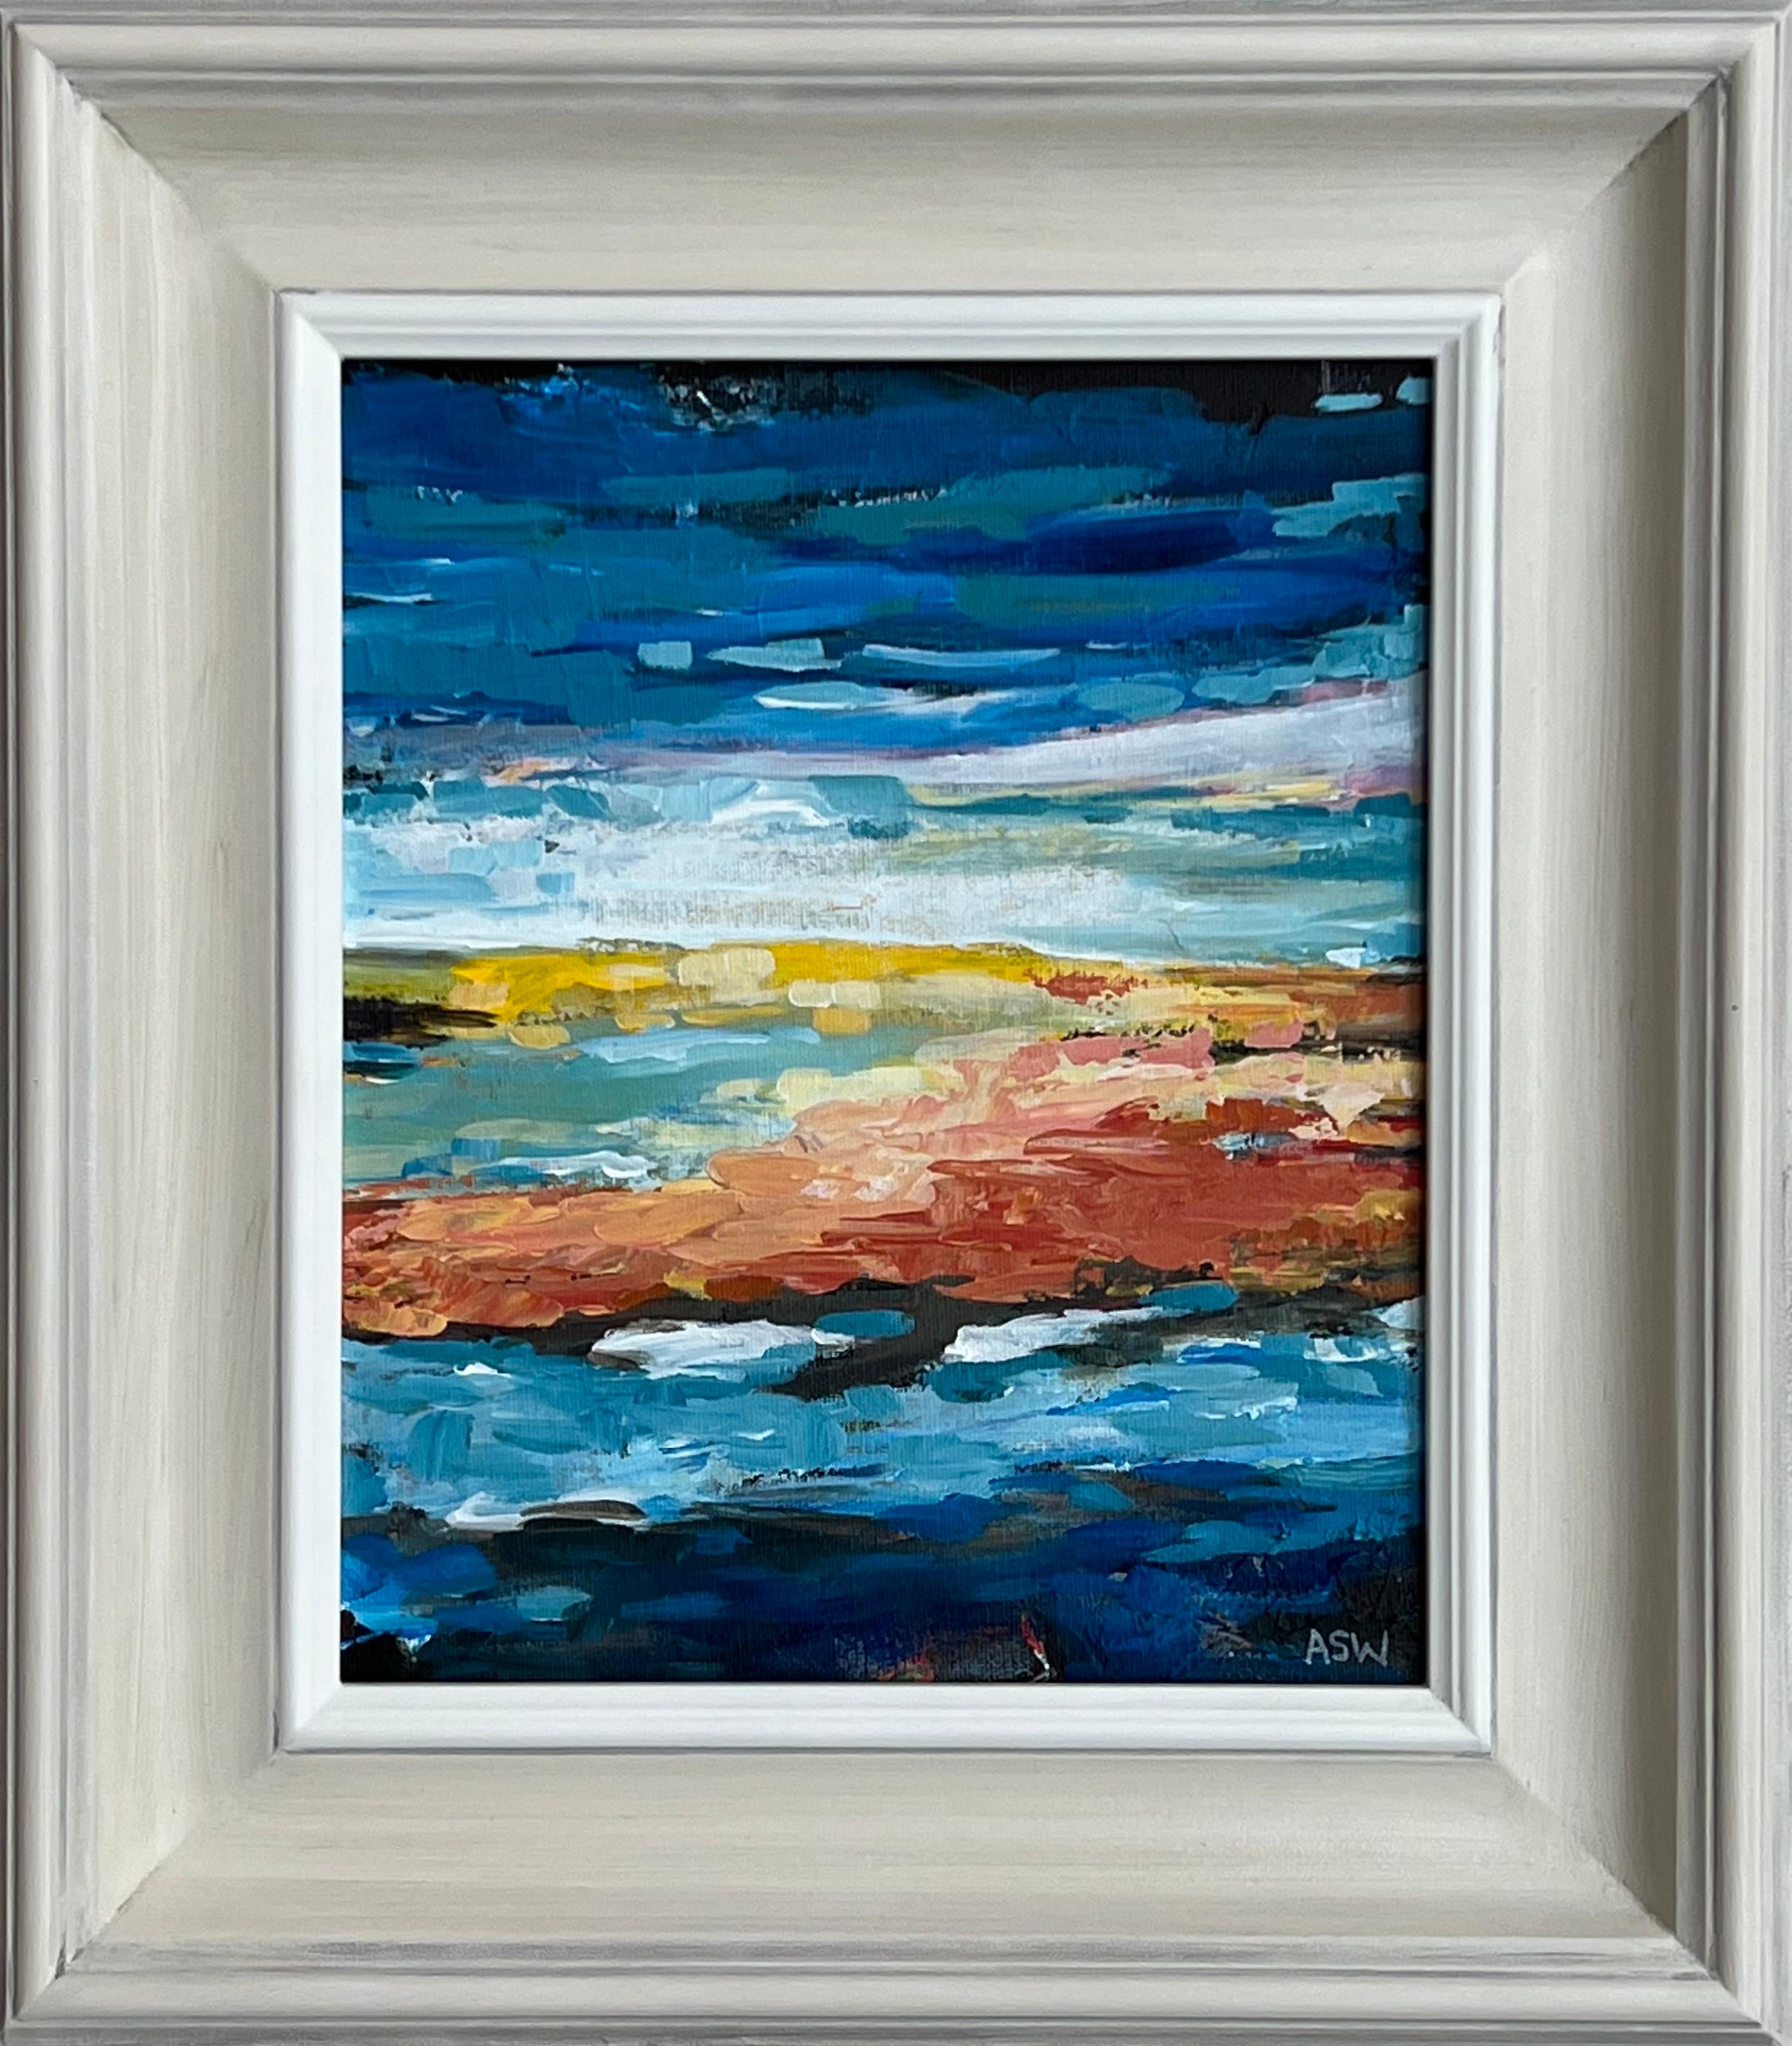 Abstract Painting Angela Wakefield - Paysage de paysage marin abstrait impressionniste bleu et jaune par l'artiste contemporain